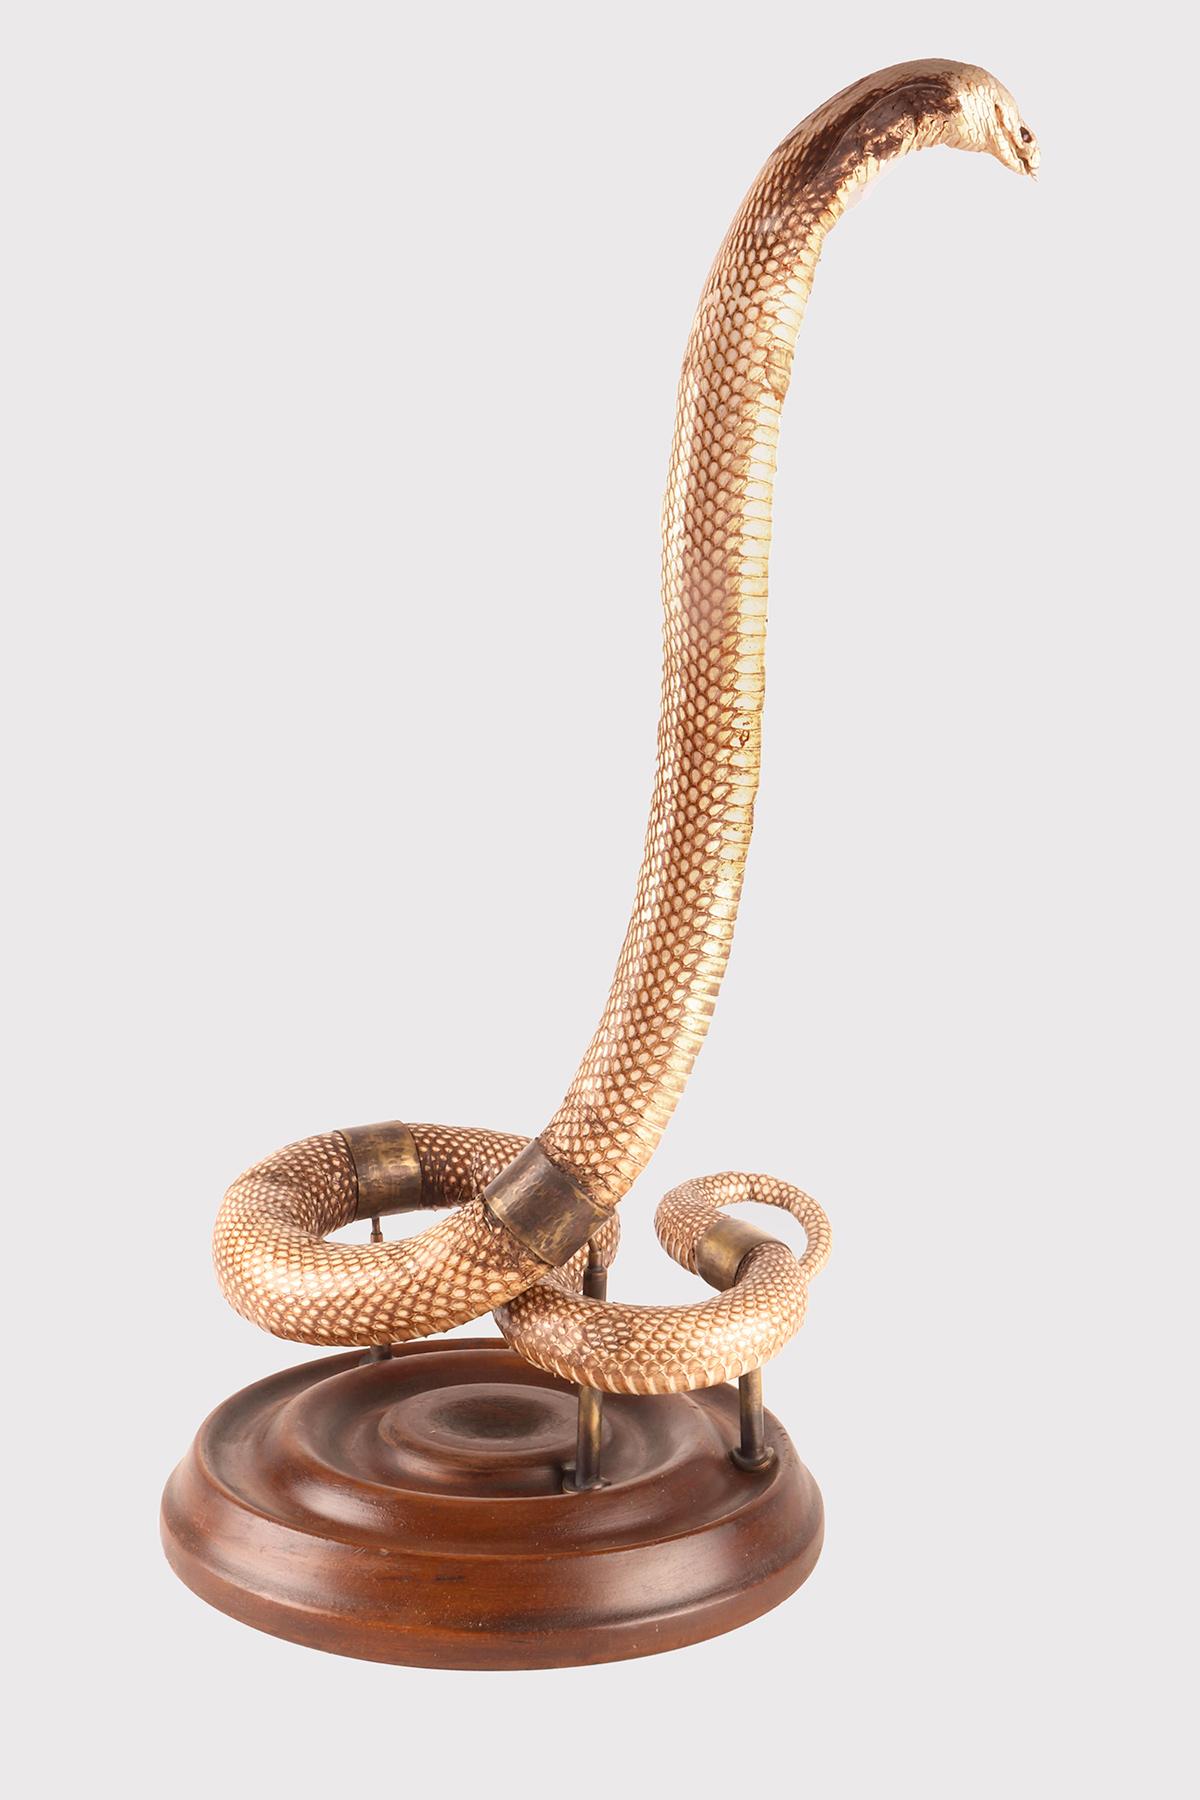 Spécimen taxidermique du serpent Hemachatus hemachatus (Bonnaterre 1790), un genre de serpent de la famille des Elapidae, communément appelé cobra. Speimen du laboratoire d'histoire naturelle dans l'attitude de l'attaque. Le spécimen est fixé sur